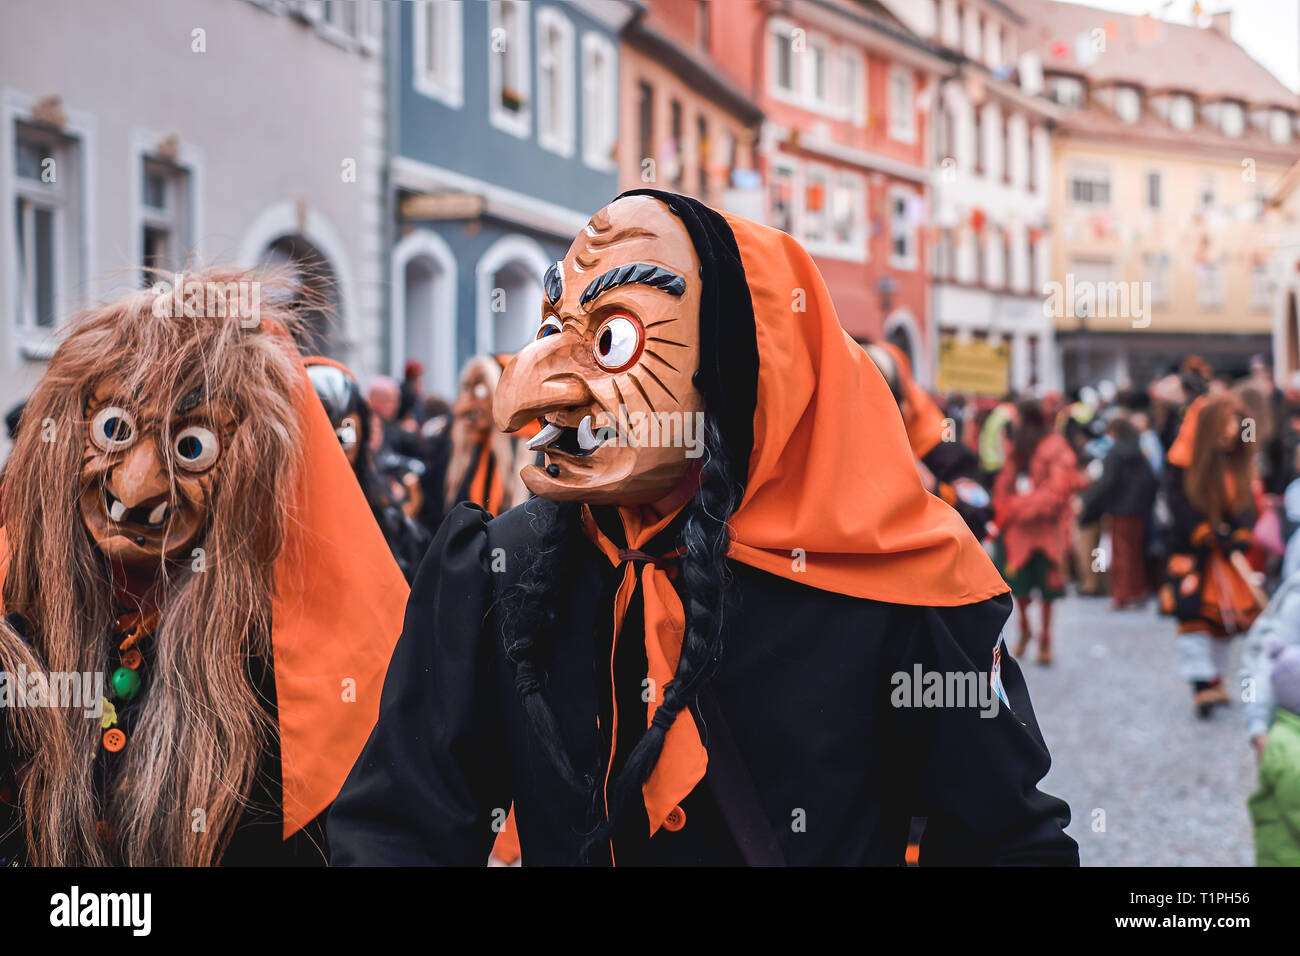 Lustige Hexe mit orangefarbenen Kopftuch und schwarze Robe, schaut auf der  Seite. Straßenkarneval im südlichen Deutschland - Schwarzwald  Stockfotografie - Alamy